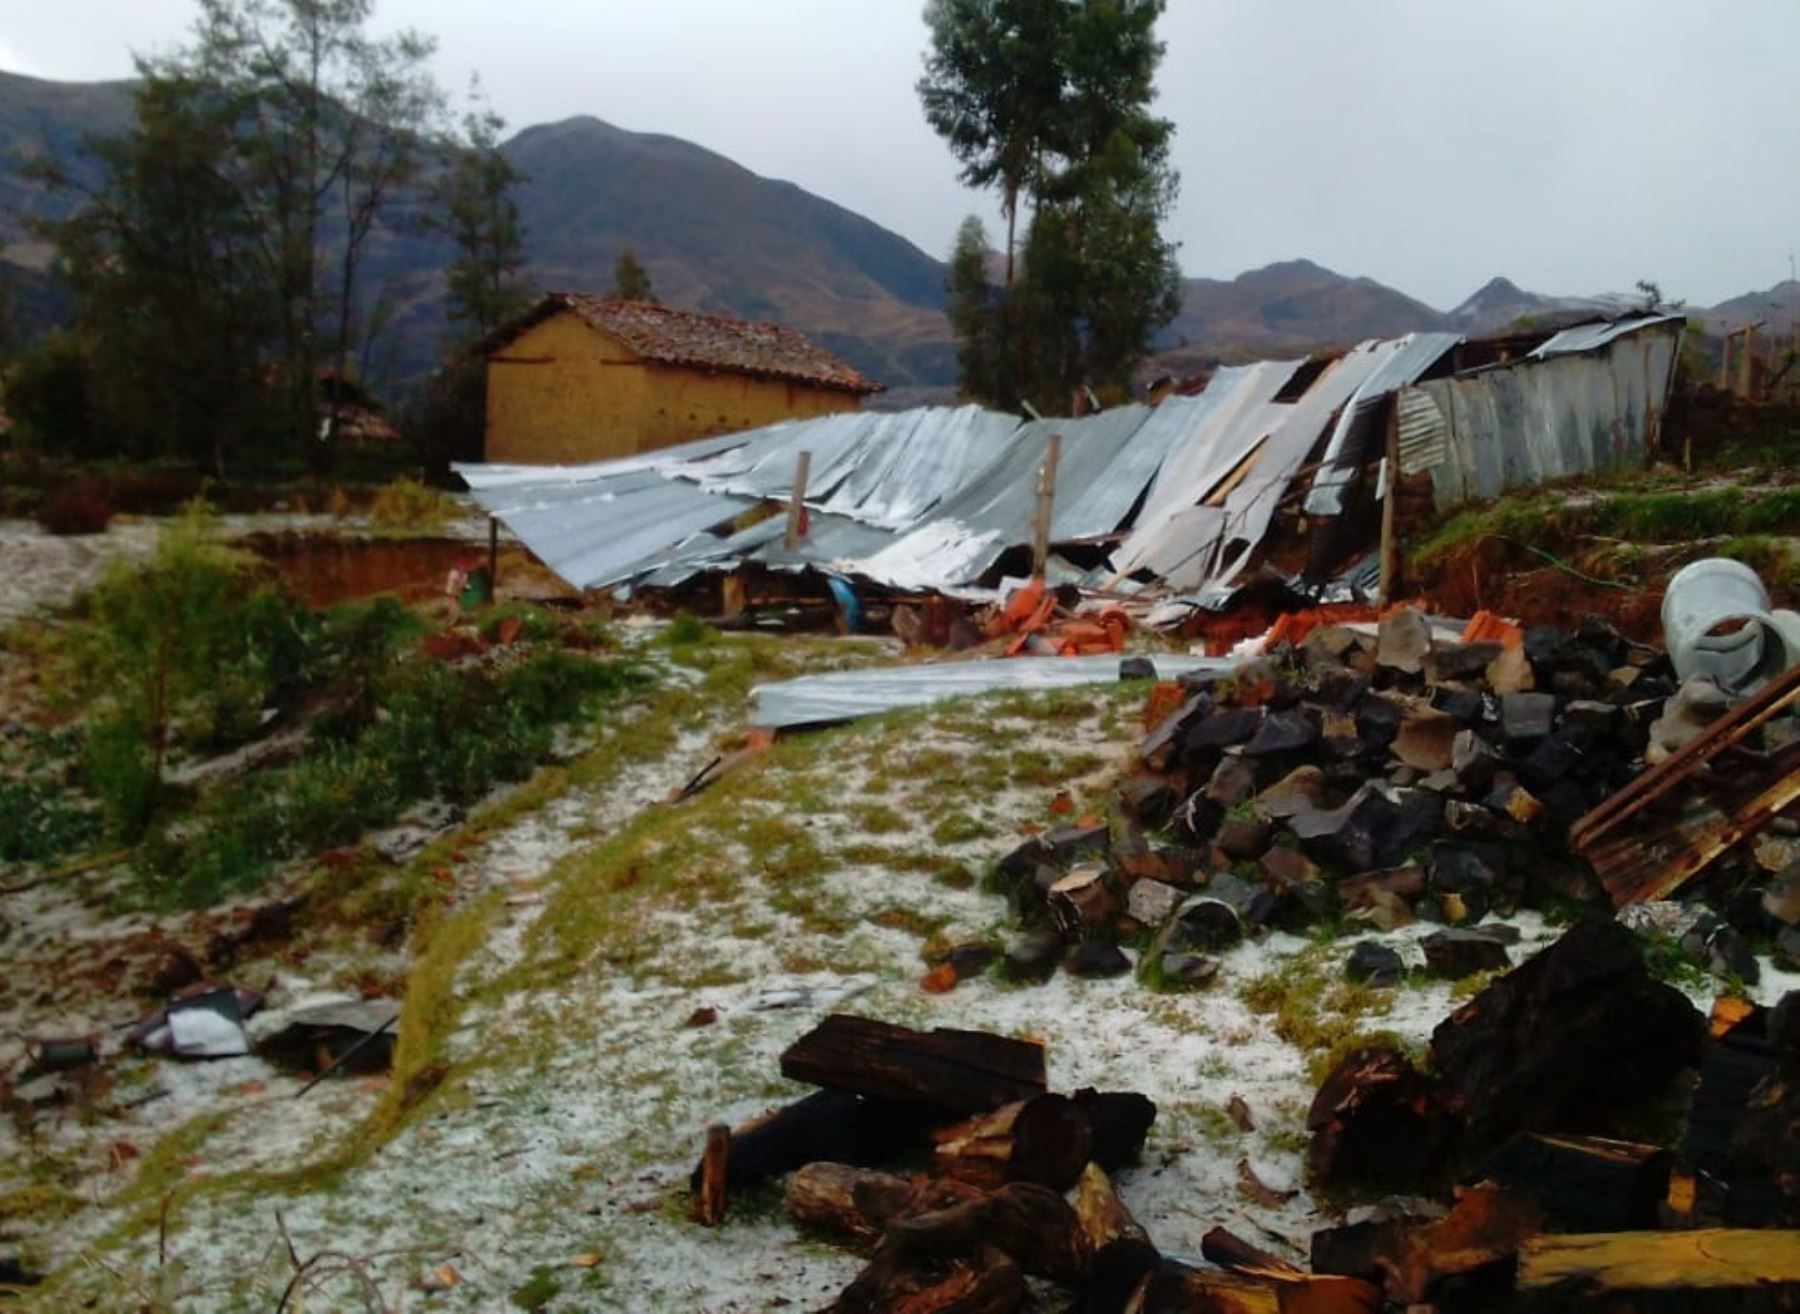 La caída de granizo en la sierra de Áncash causó daños en viviendas y zonas agrícolas de tres distritos de esa región, informó el COER. ANDINA/Difusión